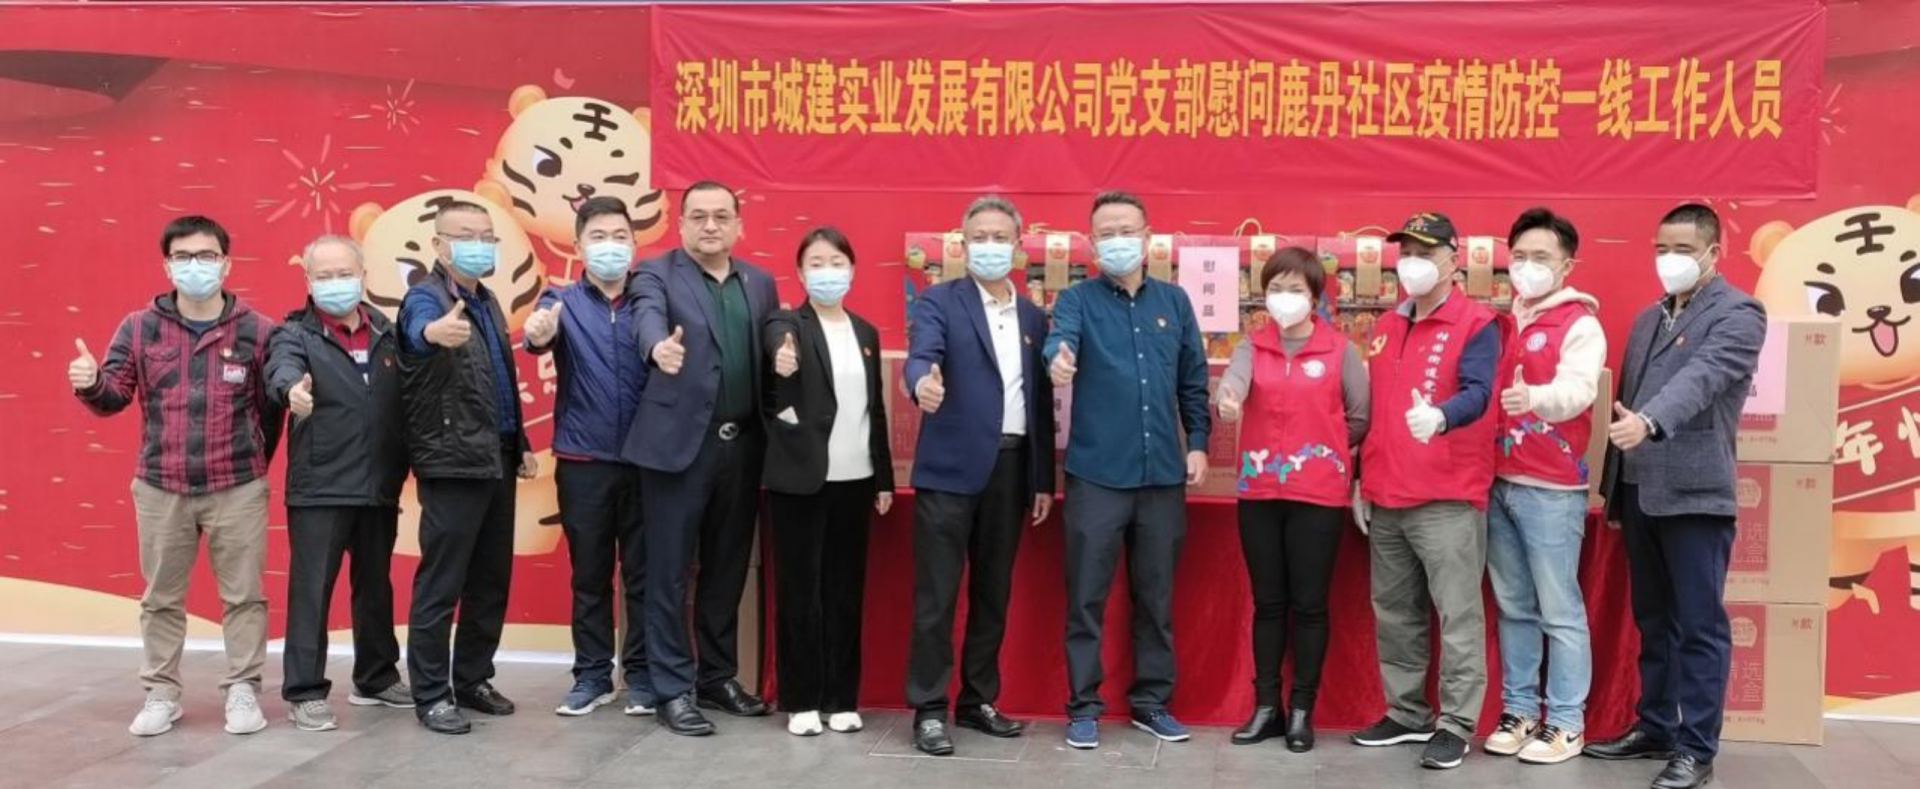 城建实业公司党支部慰问桂园街道鹿丹村社区疫情防控一线工作人员